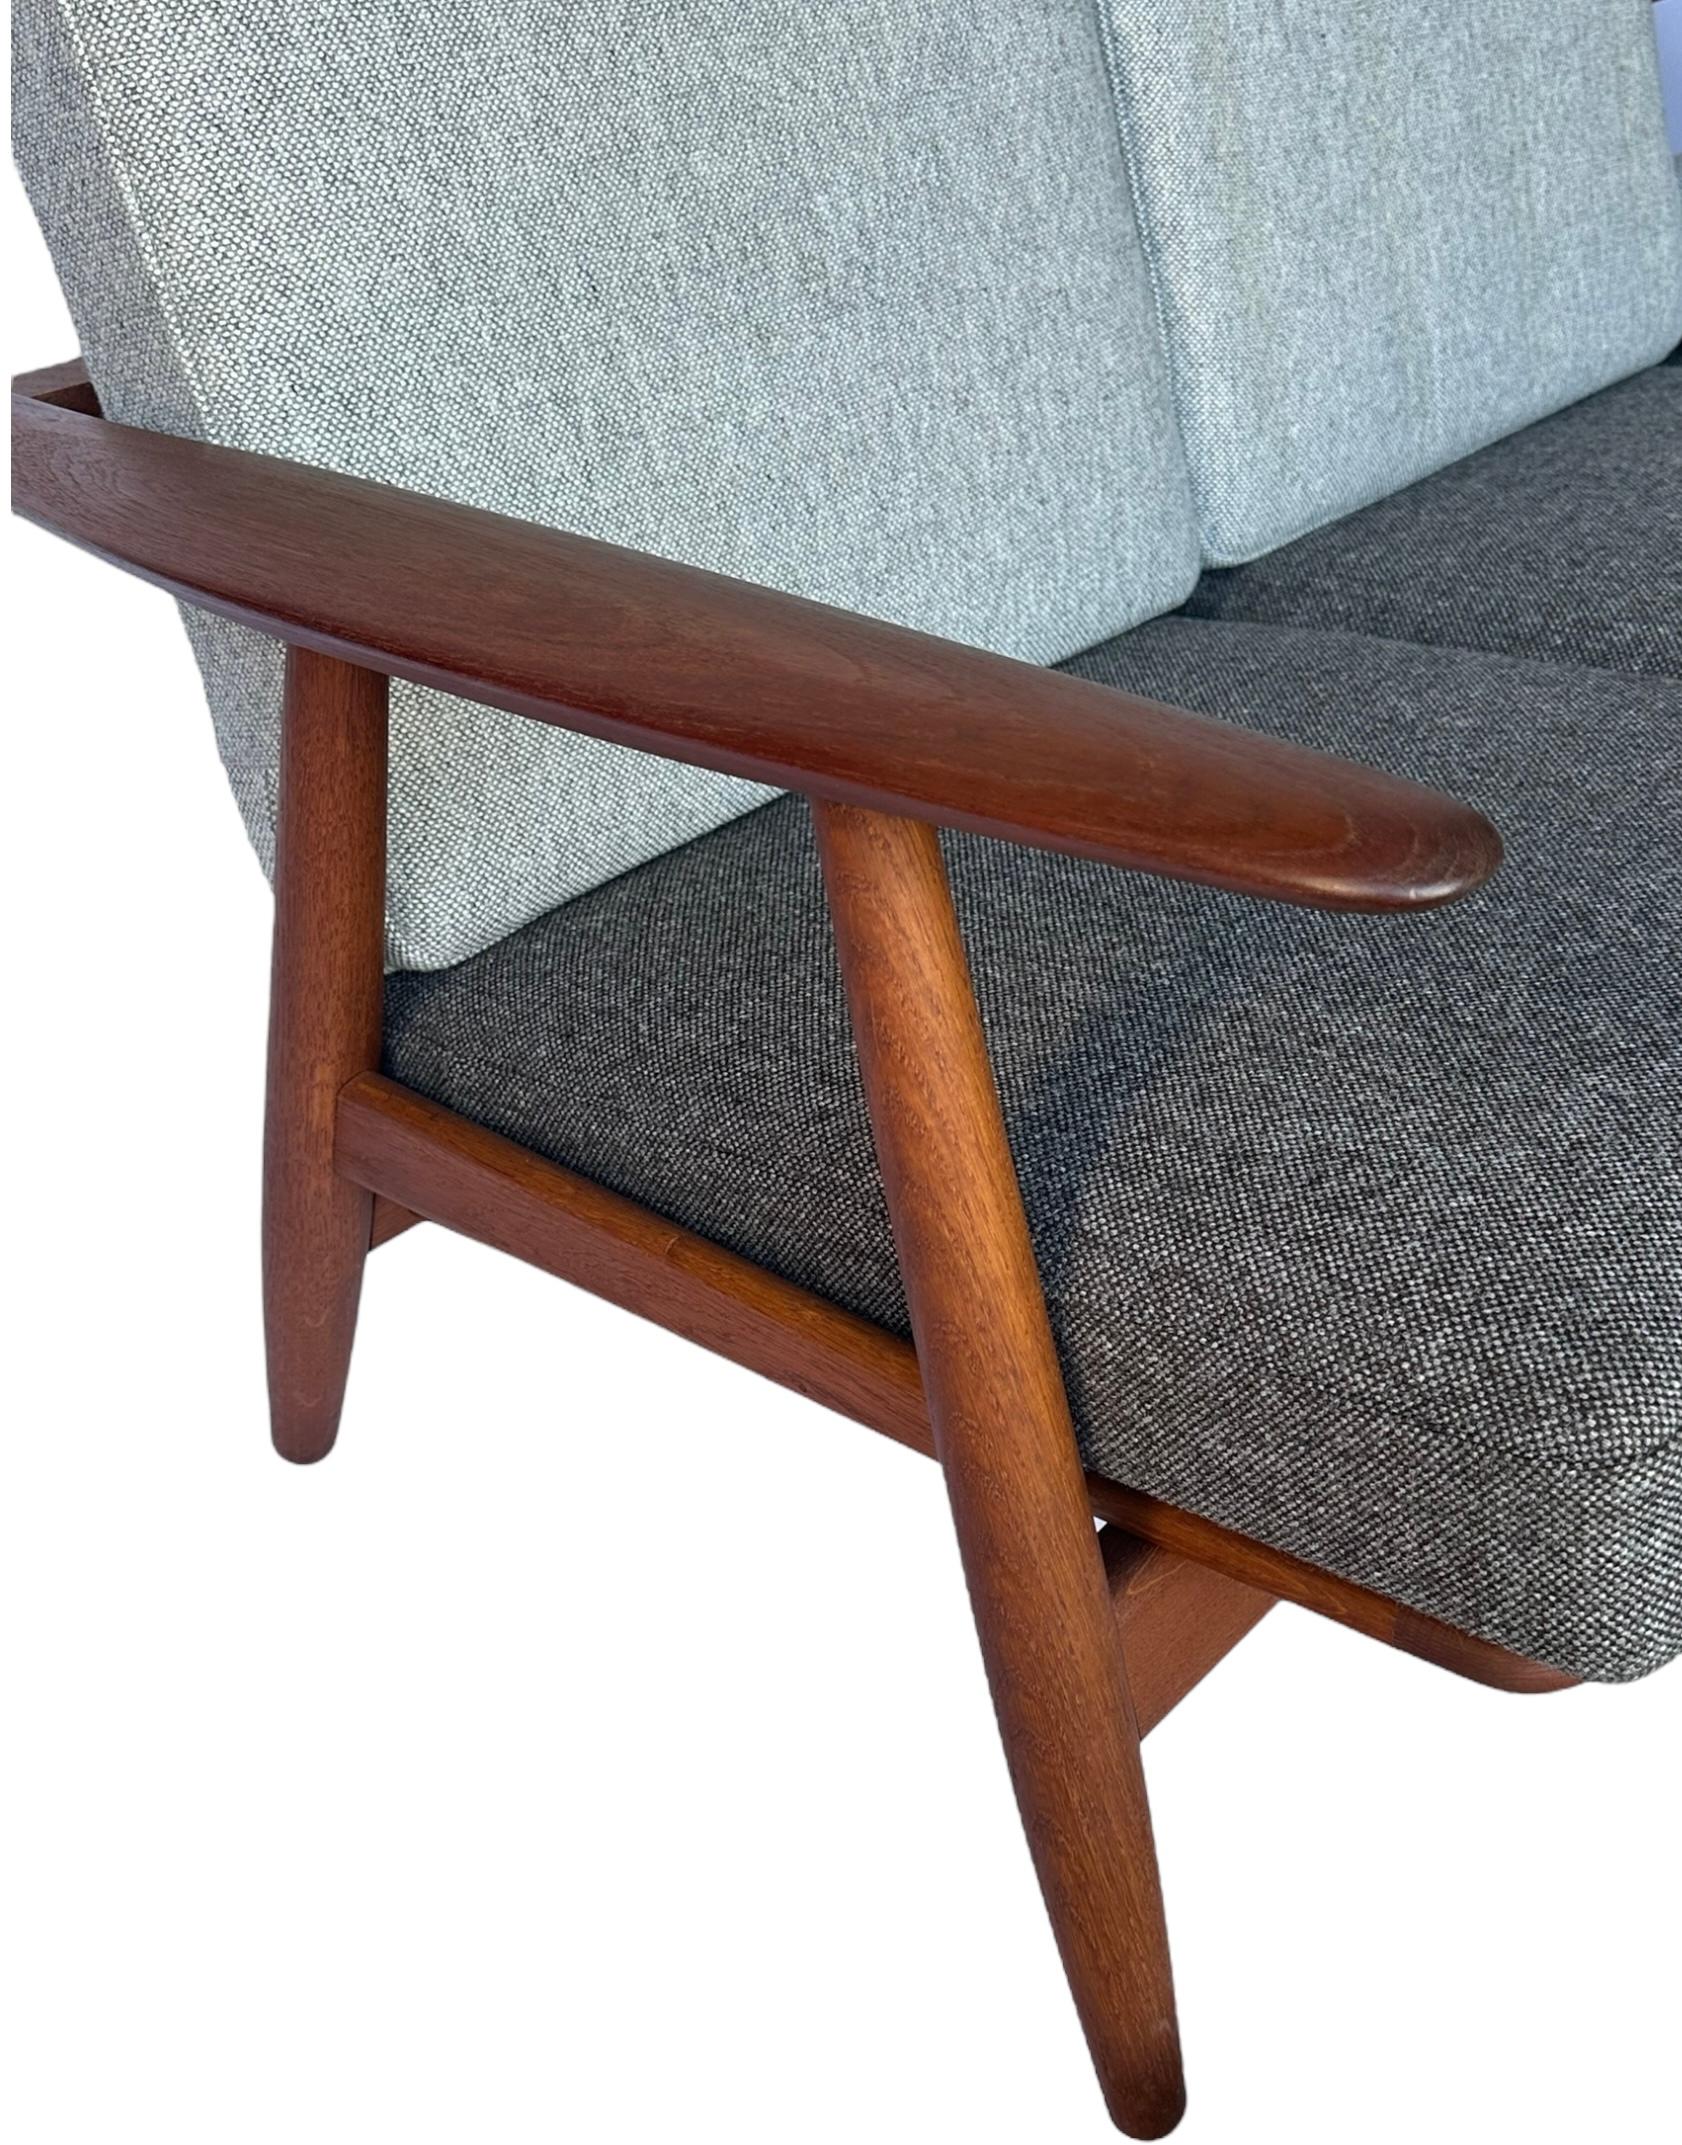 Hans J. Wegner for Getama Signed Sofa with new Mataram Upholstery For Sale 7